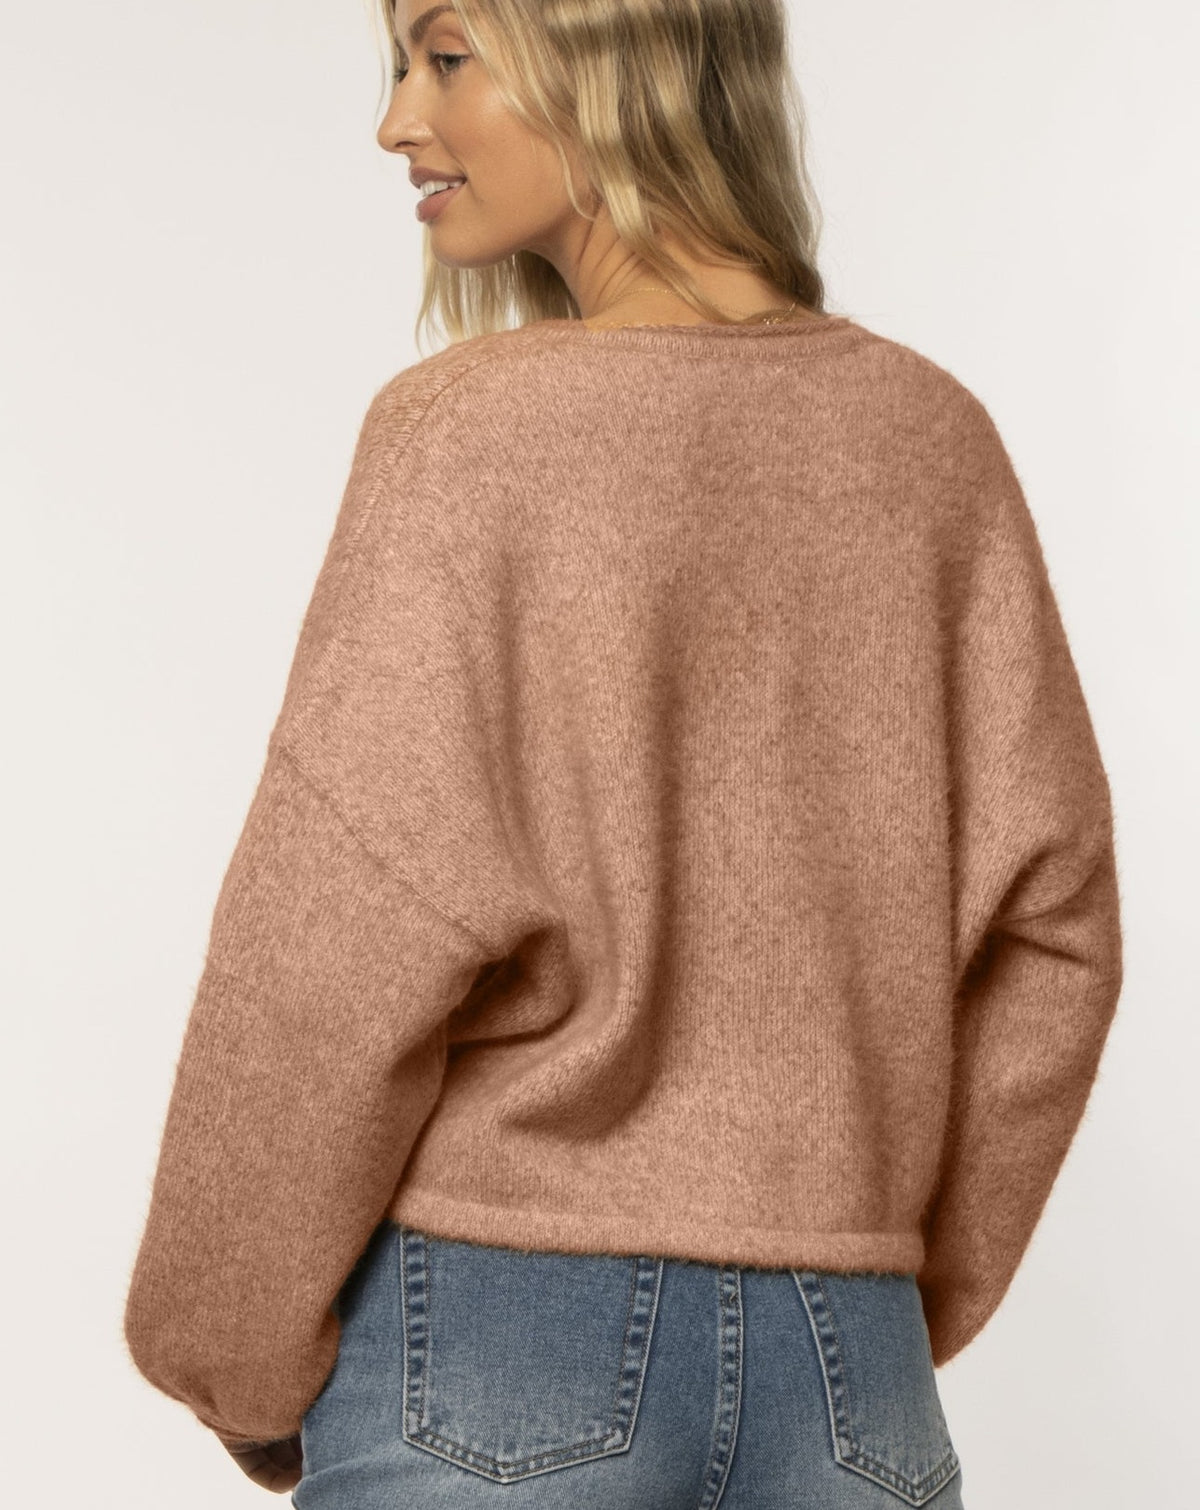 Amuse Society Nani Sweater